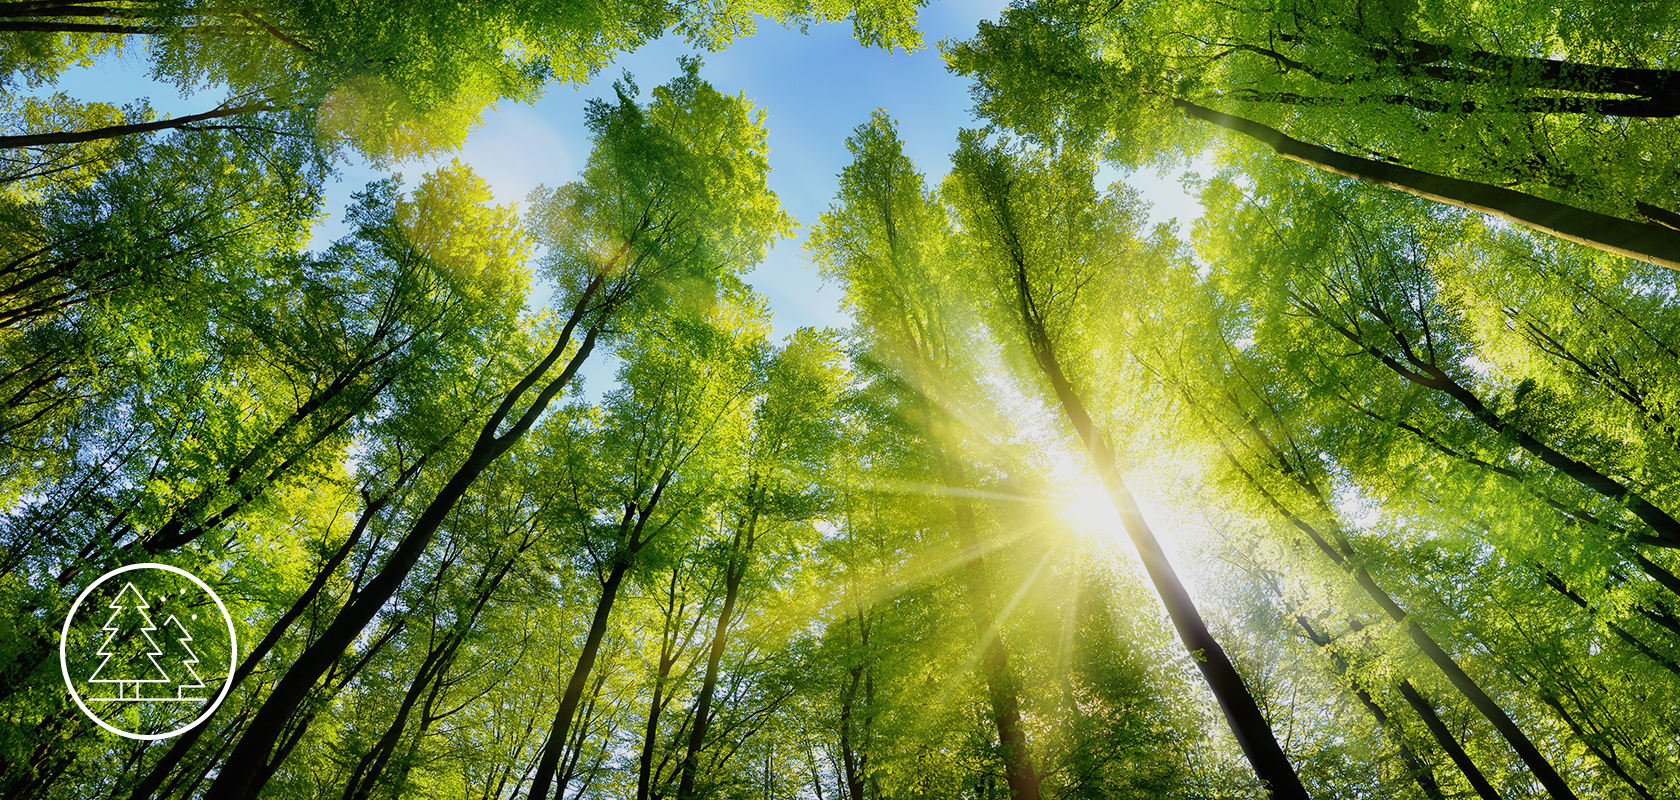 Een levendig bosdak met zonlicht dat door de bladeren stroomt, waardoor het weelderige groen wordt benadrukt en een rustige, natuurlijke achtergrond creëert.